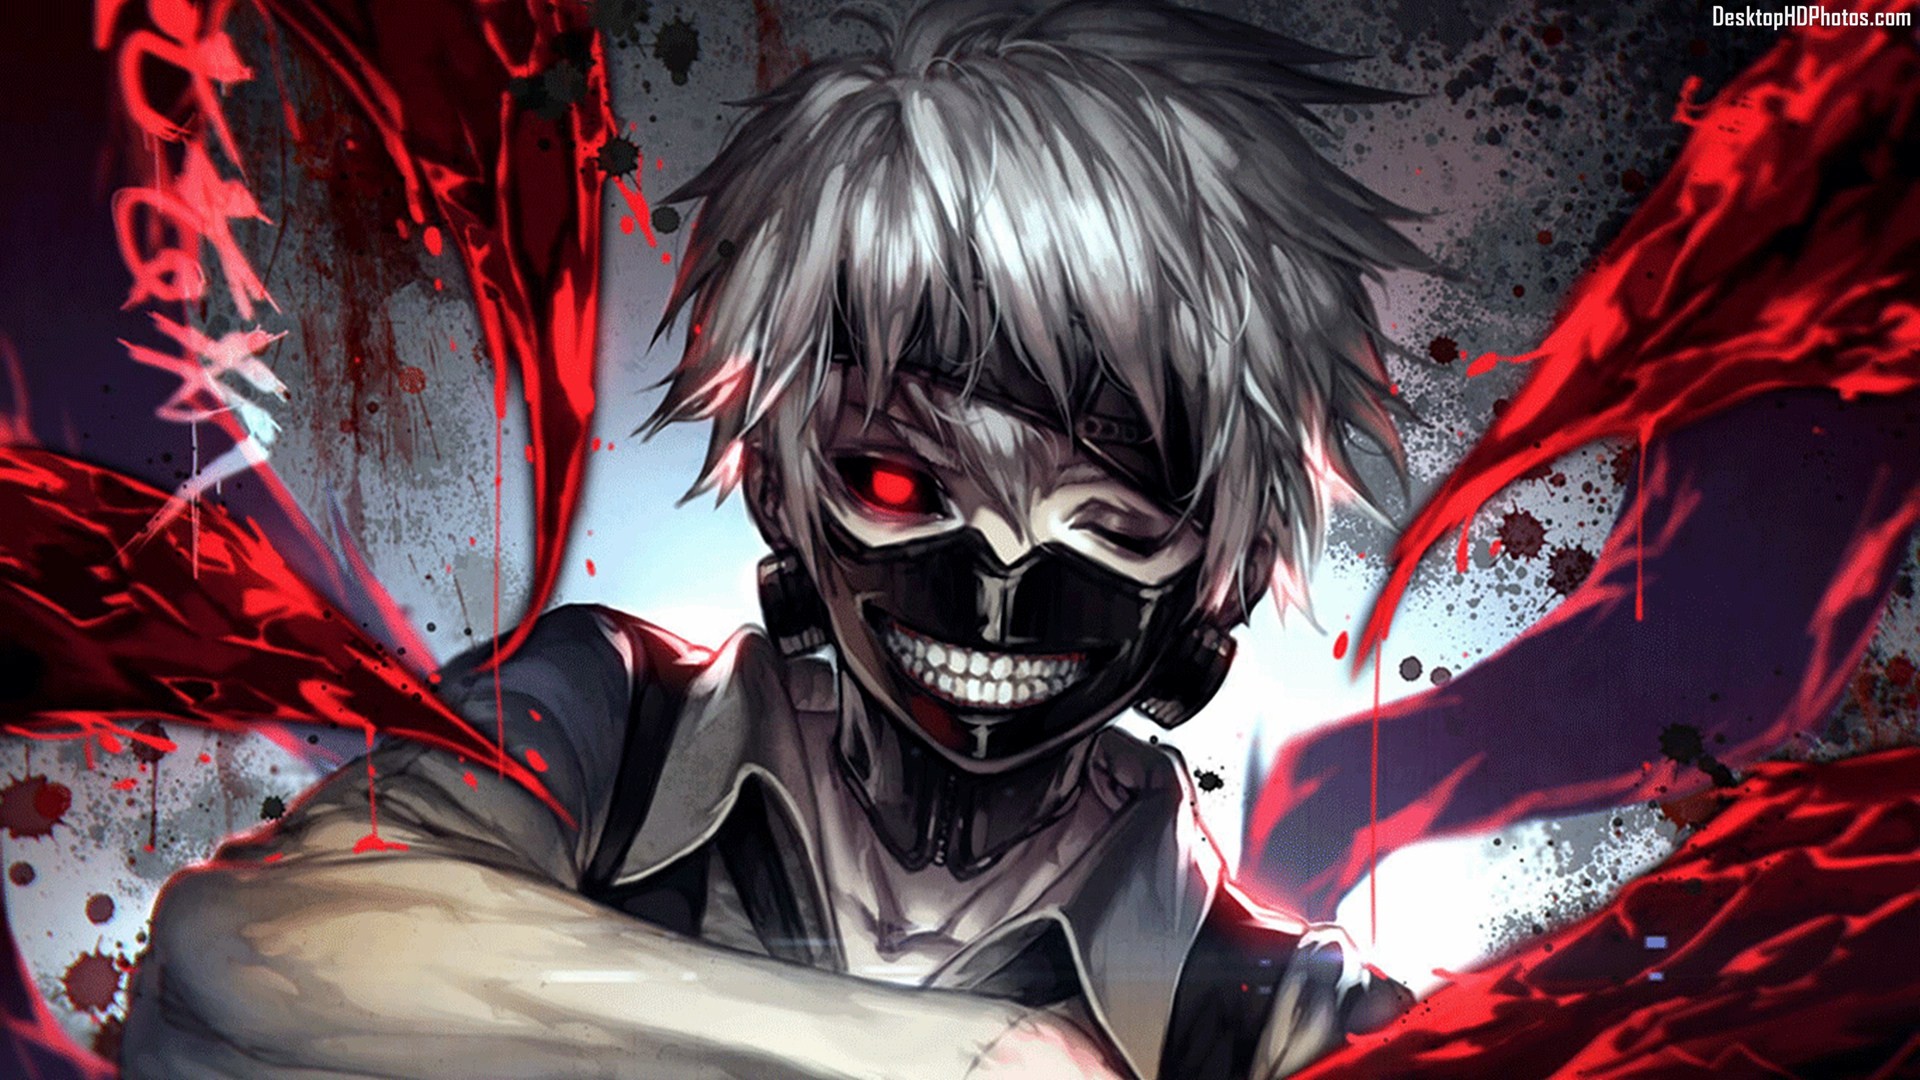 kaneki wallpaper,personaje de ficción,cg artwork,anime,demonio,ilustración